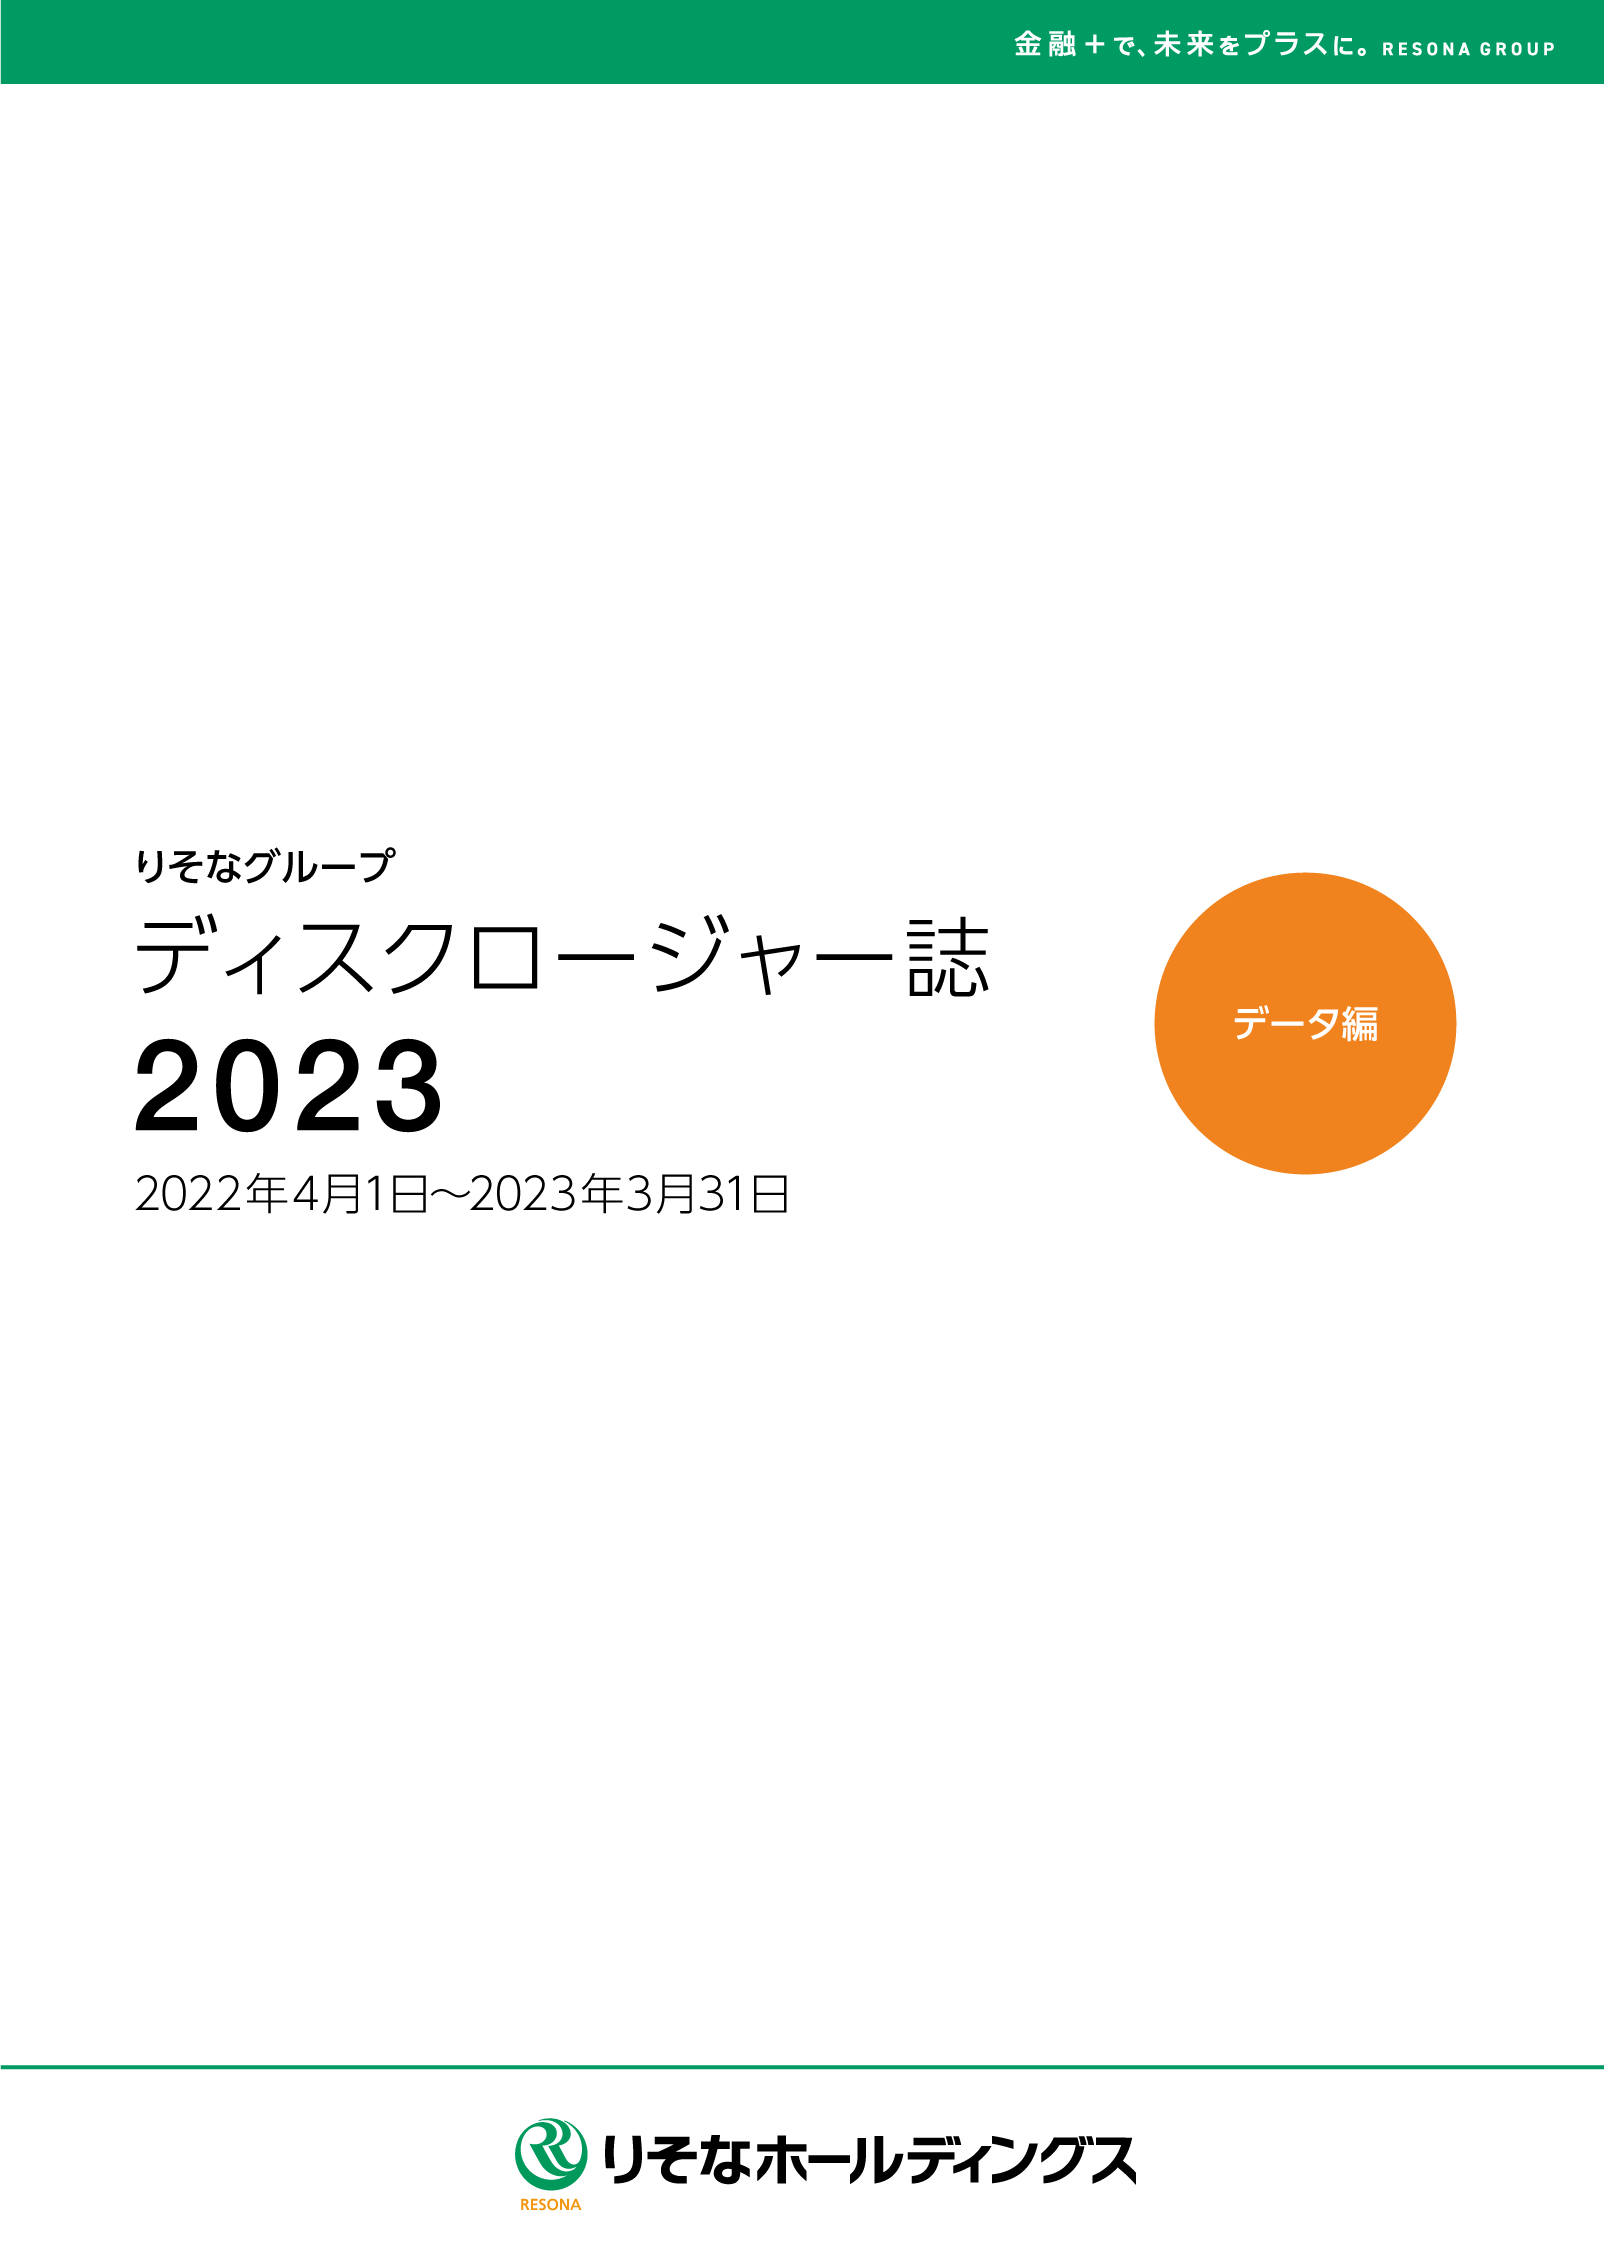 ディスクロージャー誌2023 データ編